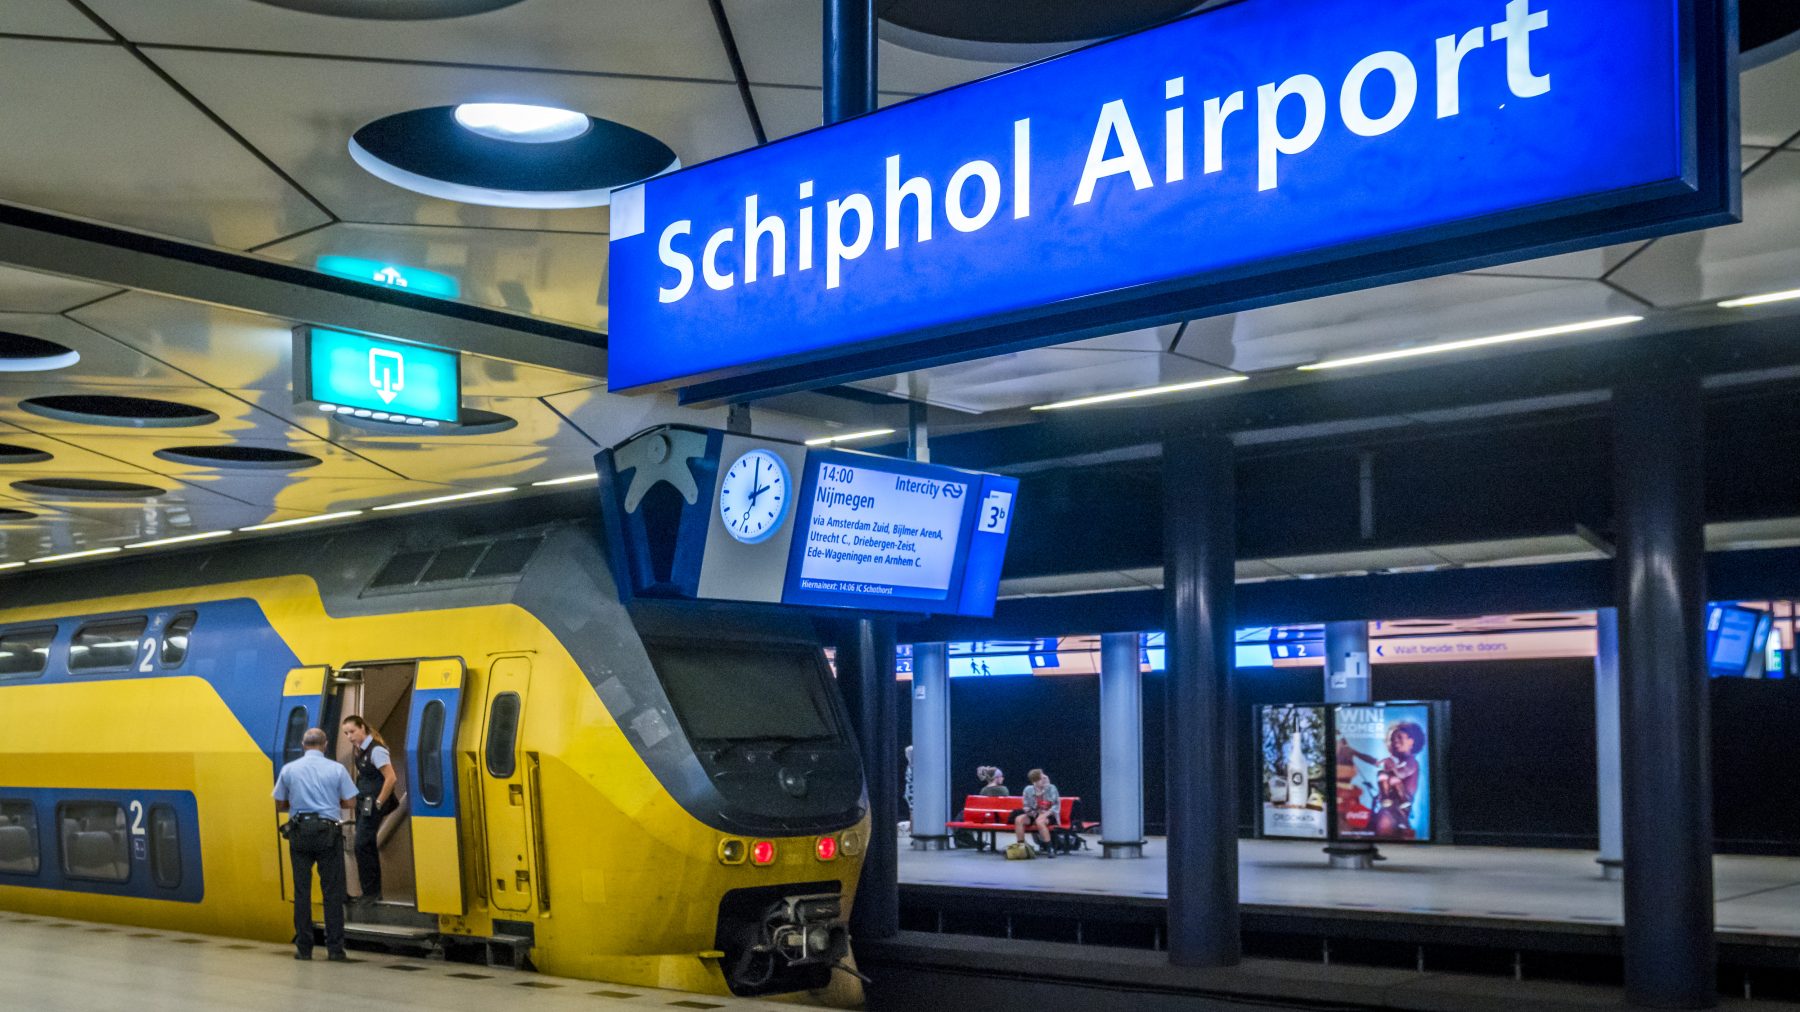 Rechter besluit geen staking openbaar vervoer richting Schiphol